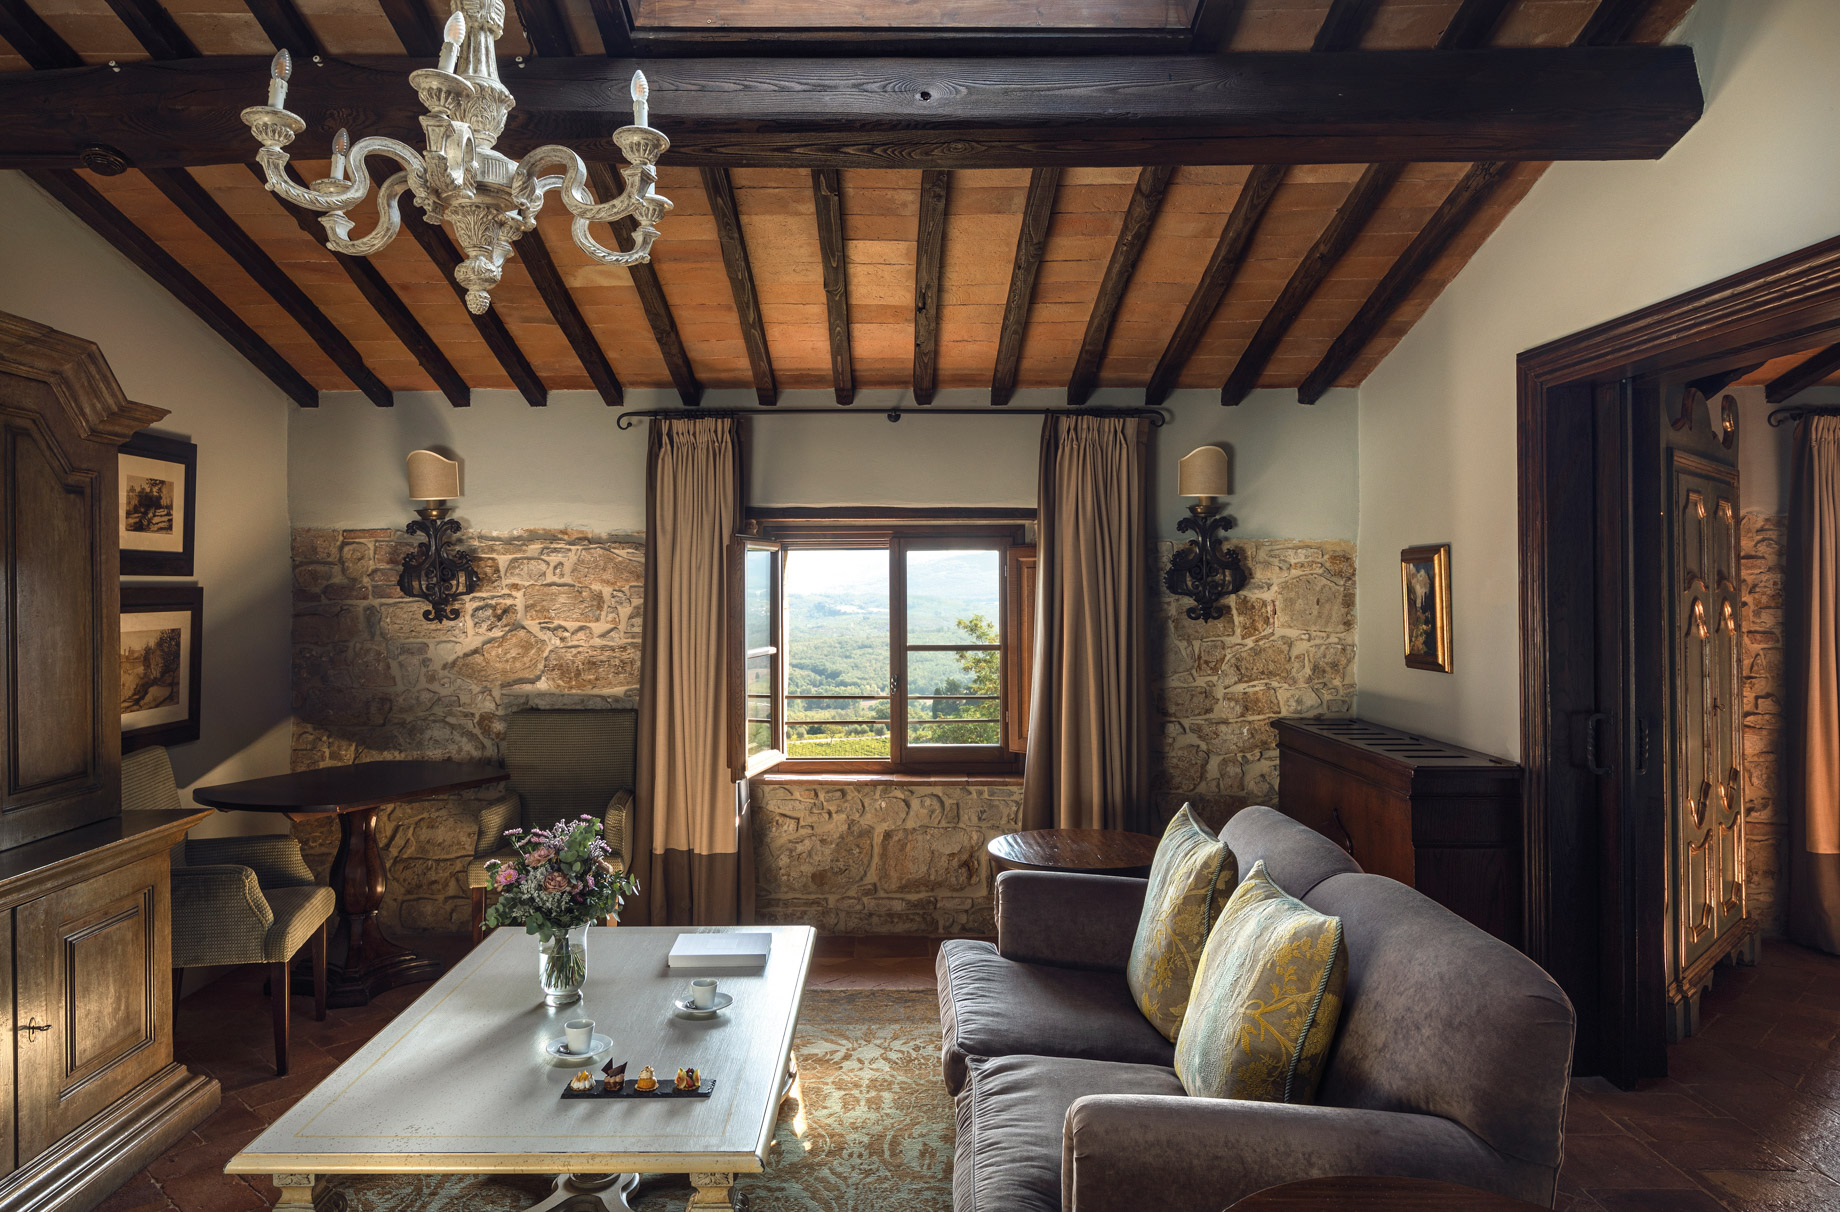 Castello di Casole, A Belmond Hotel, Tuscany – Casole d’Elsa, Italy – Suite Grandiosa